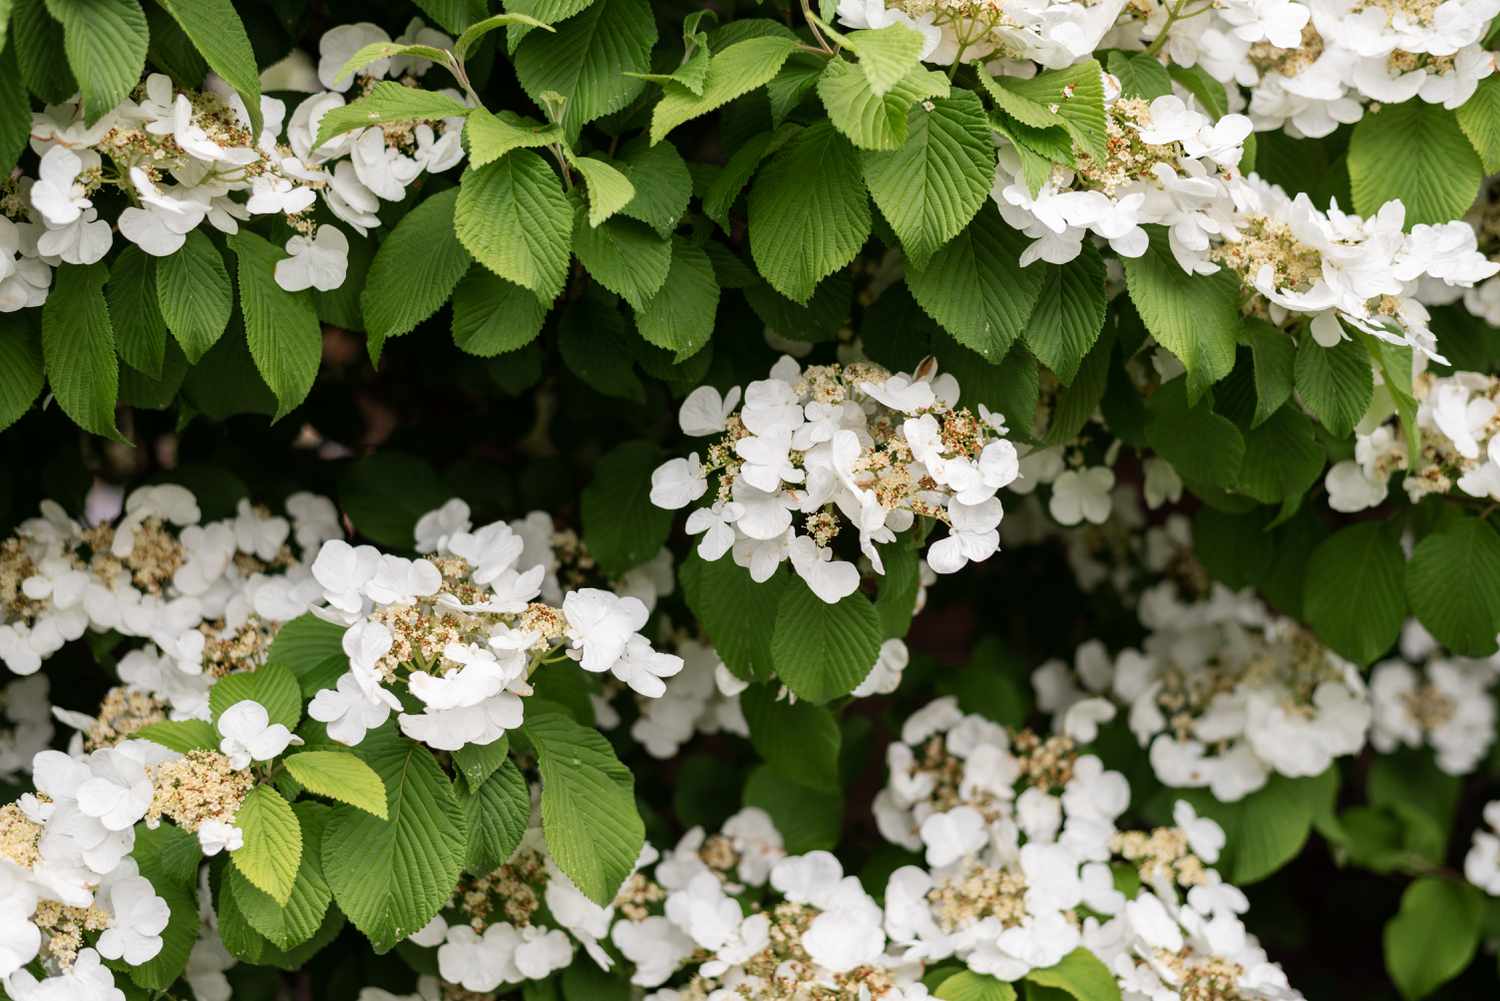 Arbusto de hortênsia trepadeira com pequenas flores brancas agrupadas entre as trepadeiras